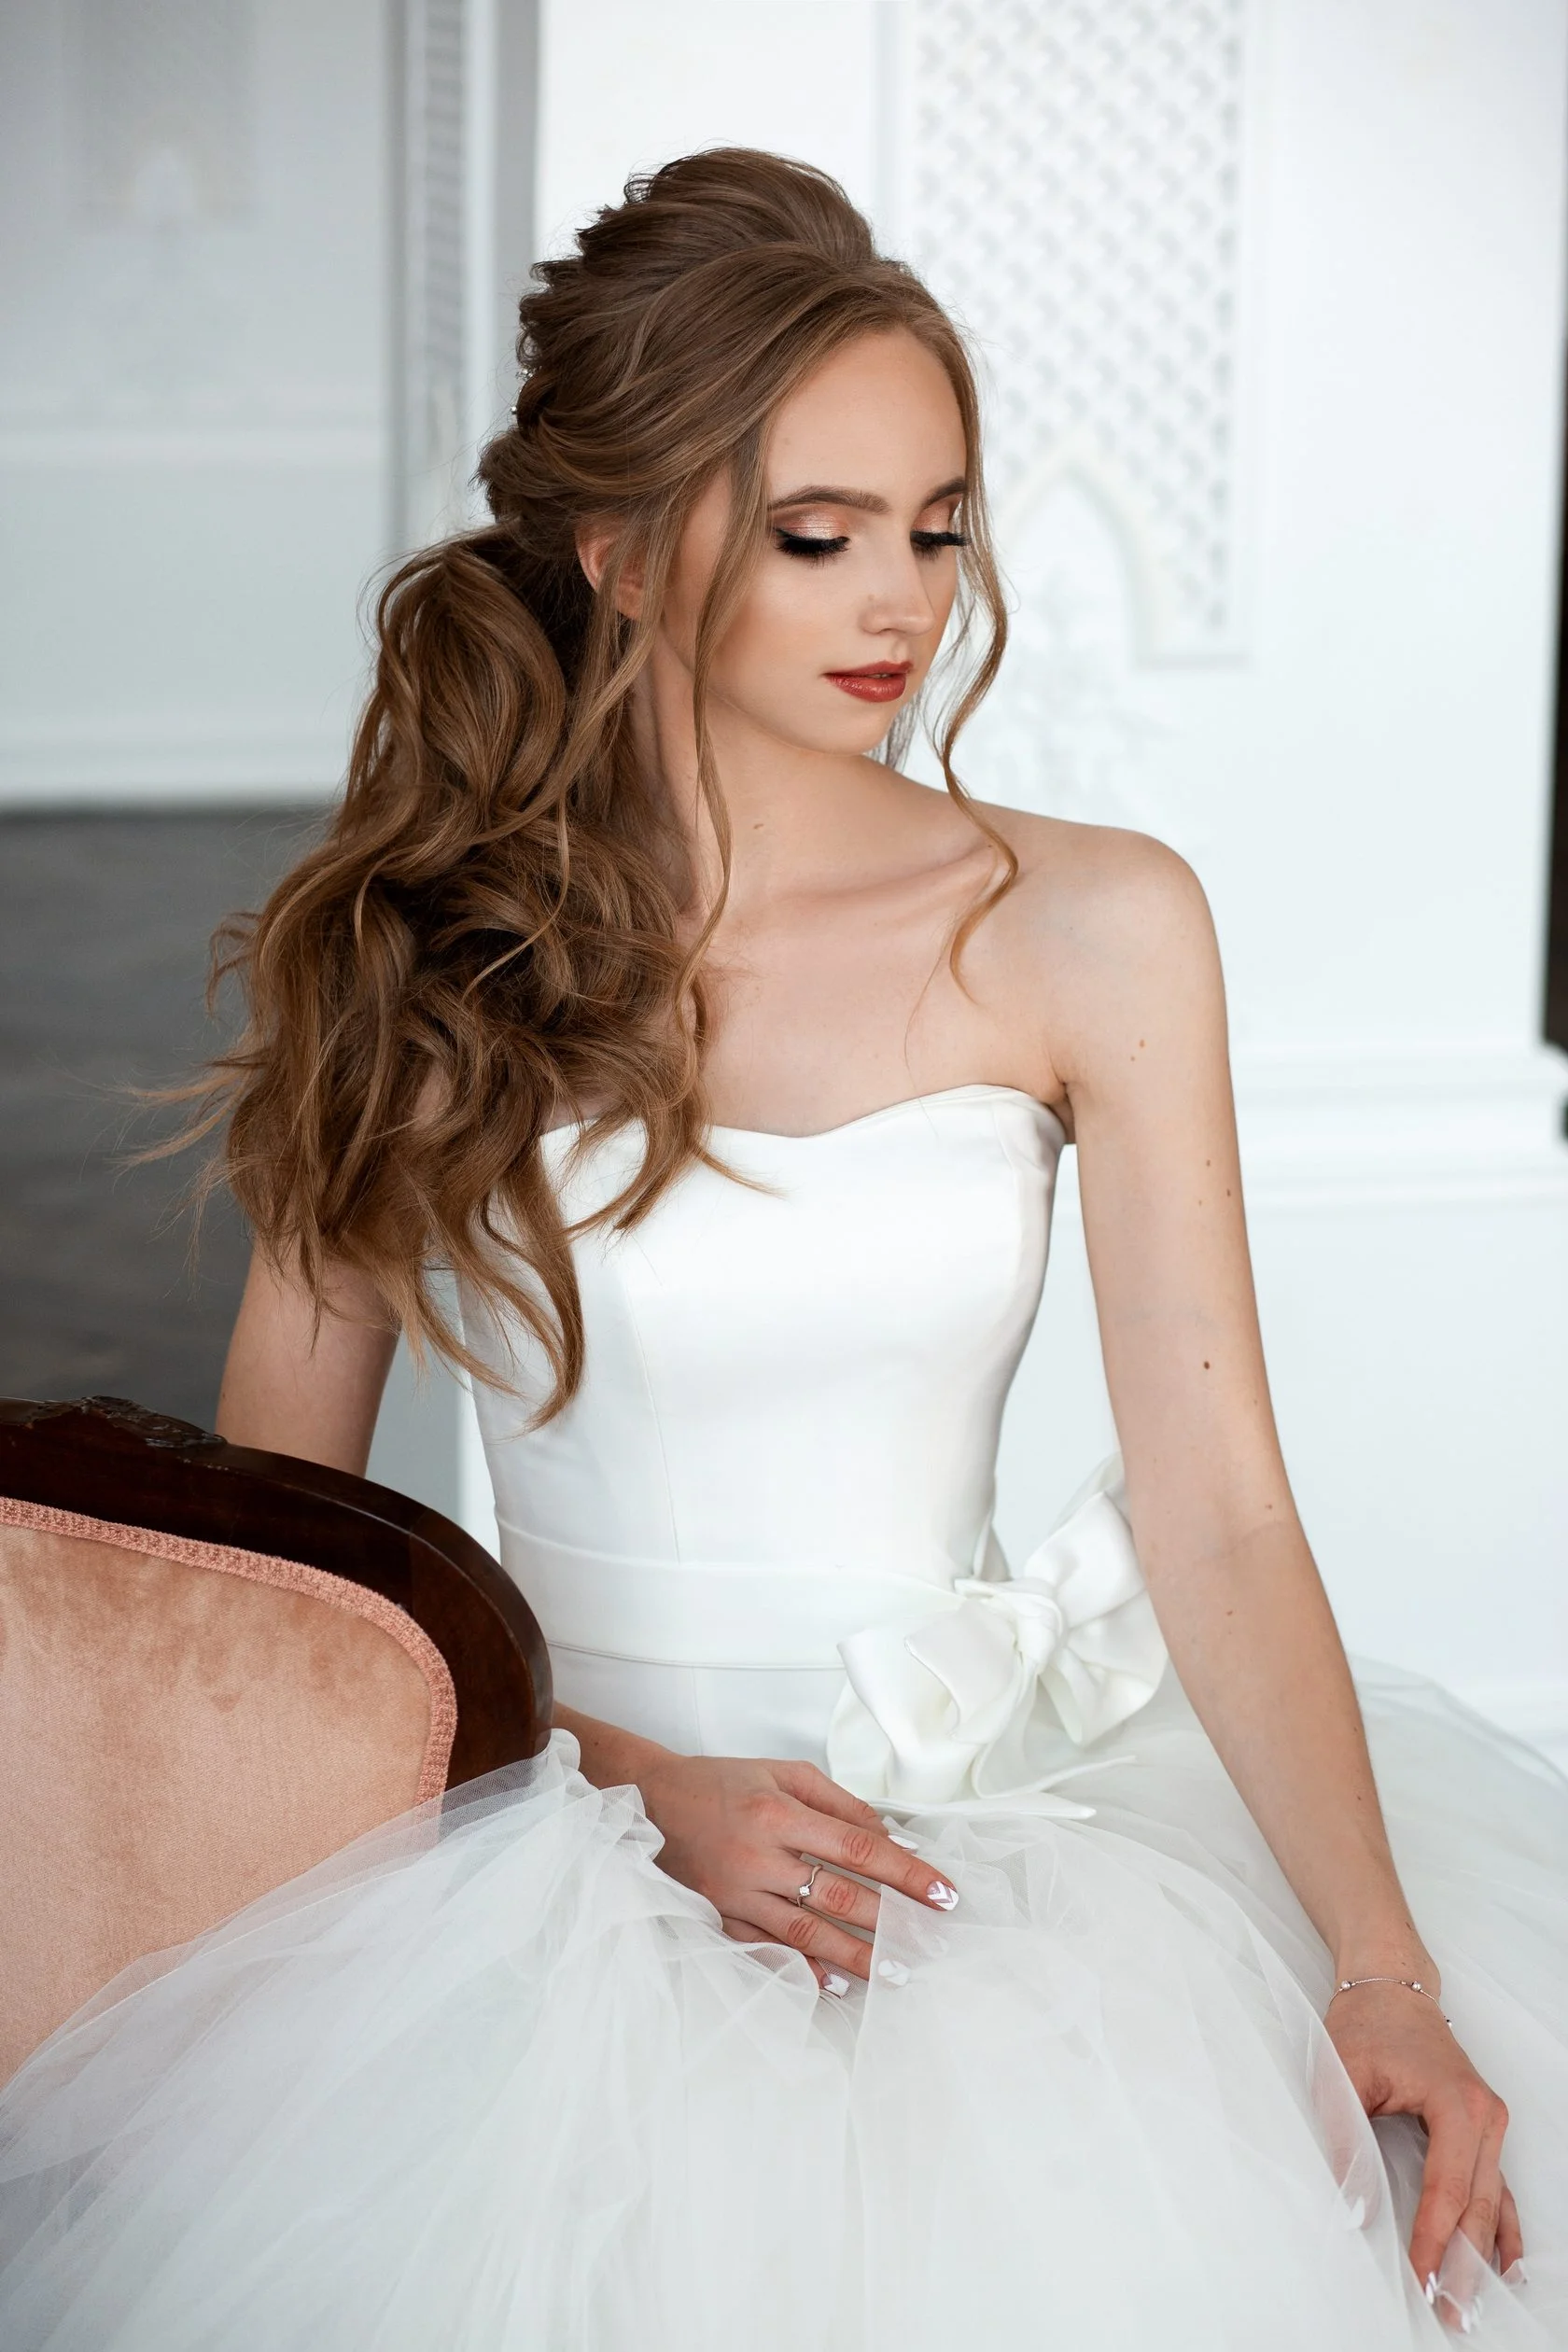 Свадебные прически 2019: фото лучших вариантов укладок для невесты - фото 438890